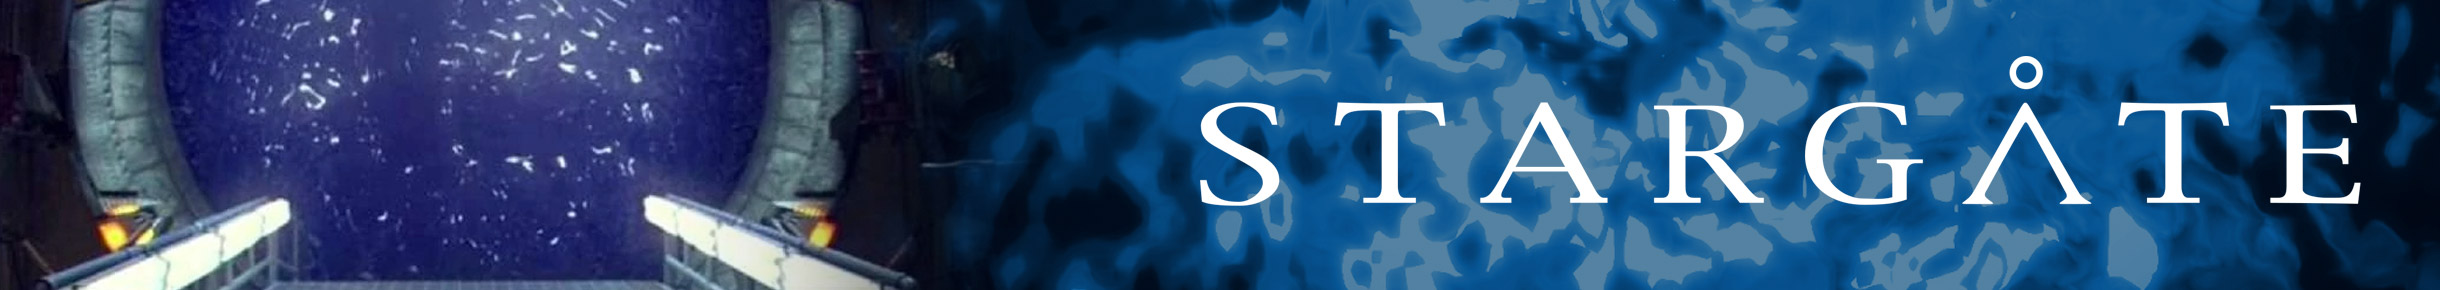 Stargate Merchandise Banner